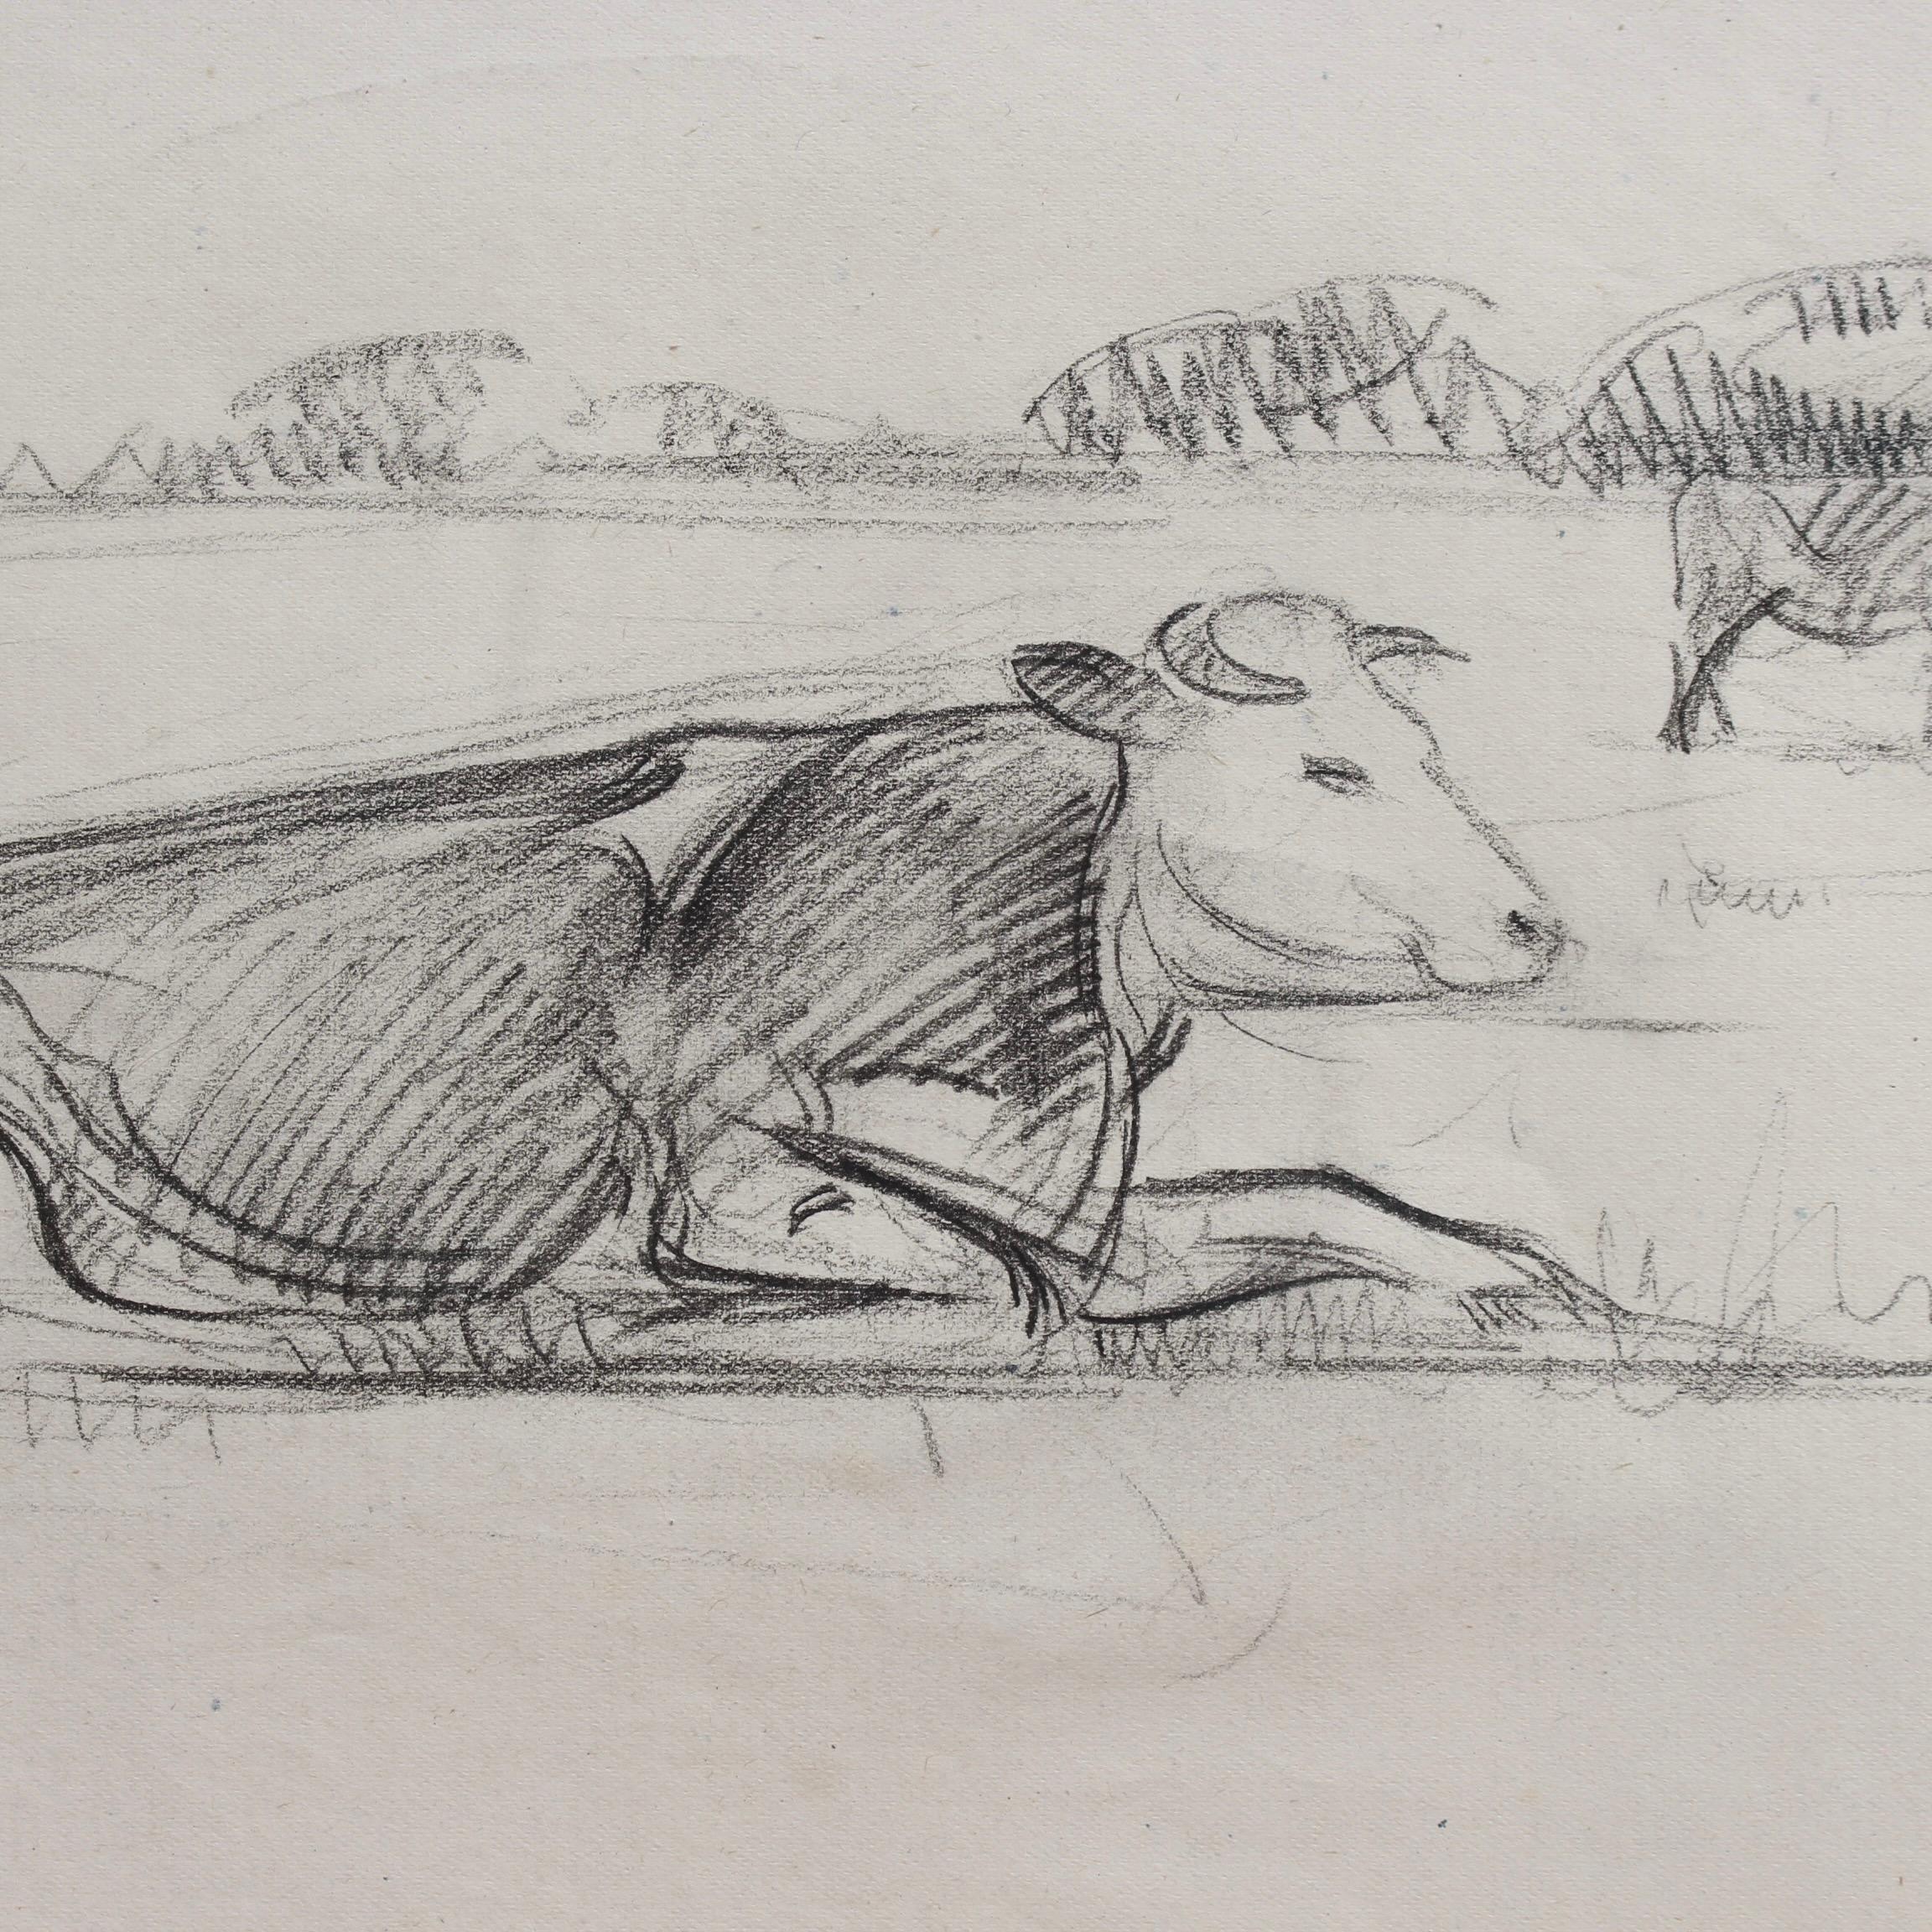 Portrait of a Bull in a Field 2